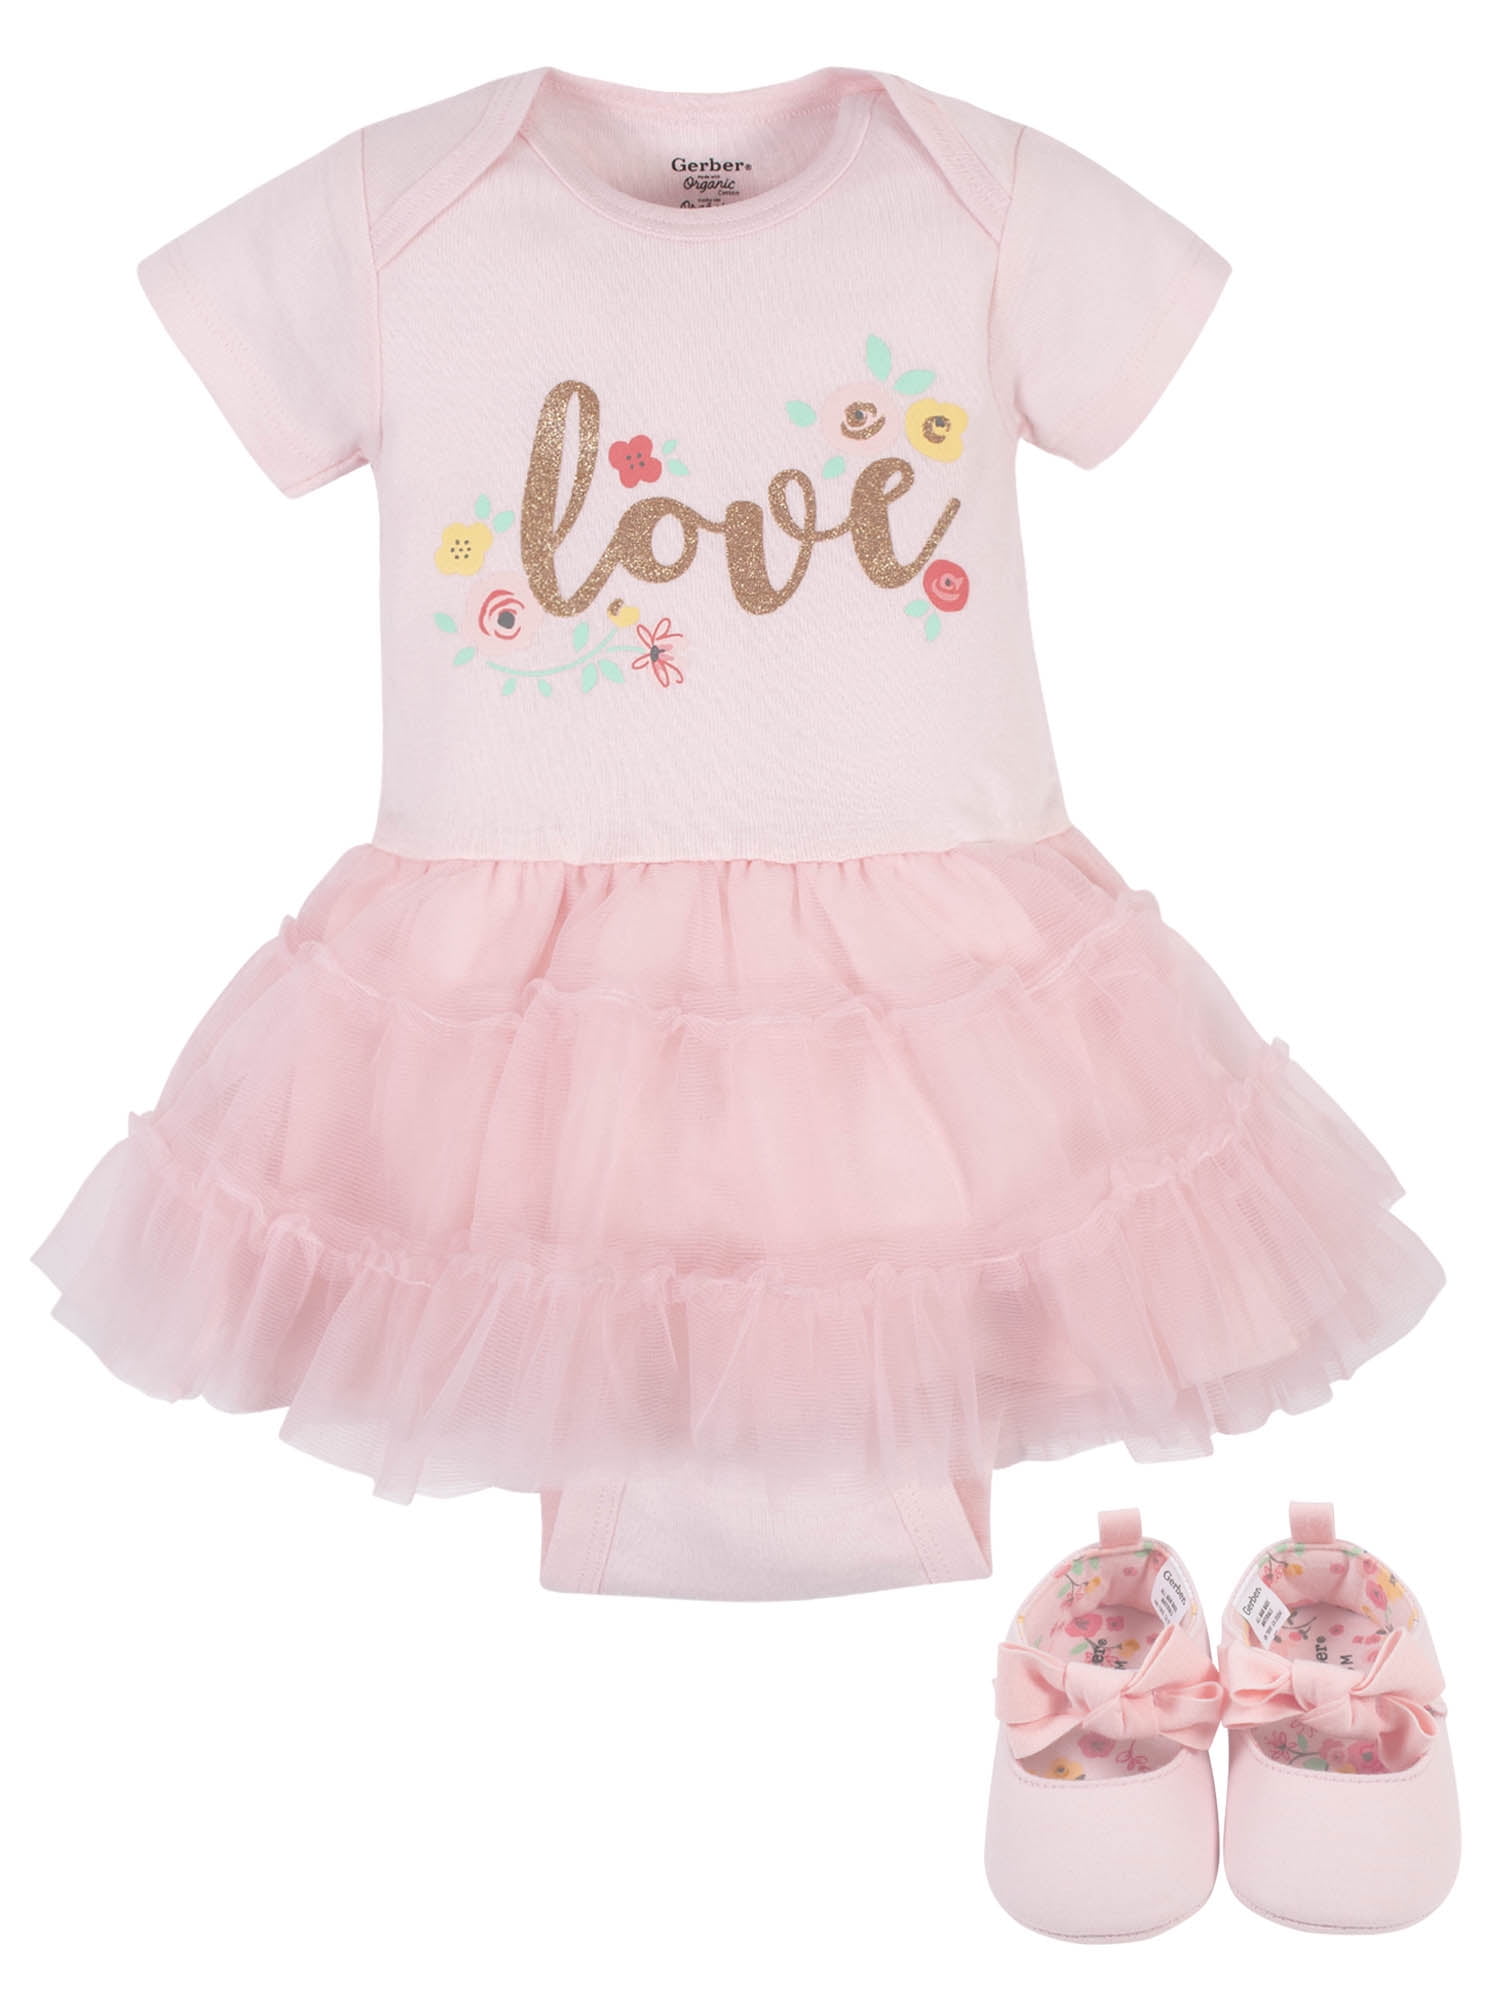 Flower Girls Super Soft Tights Black Cream White Baby Pink Love Heart Design thi 